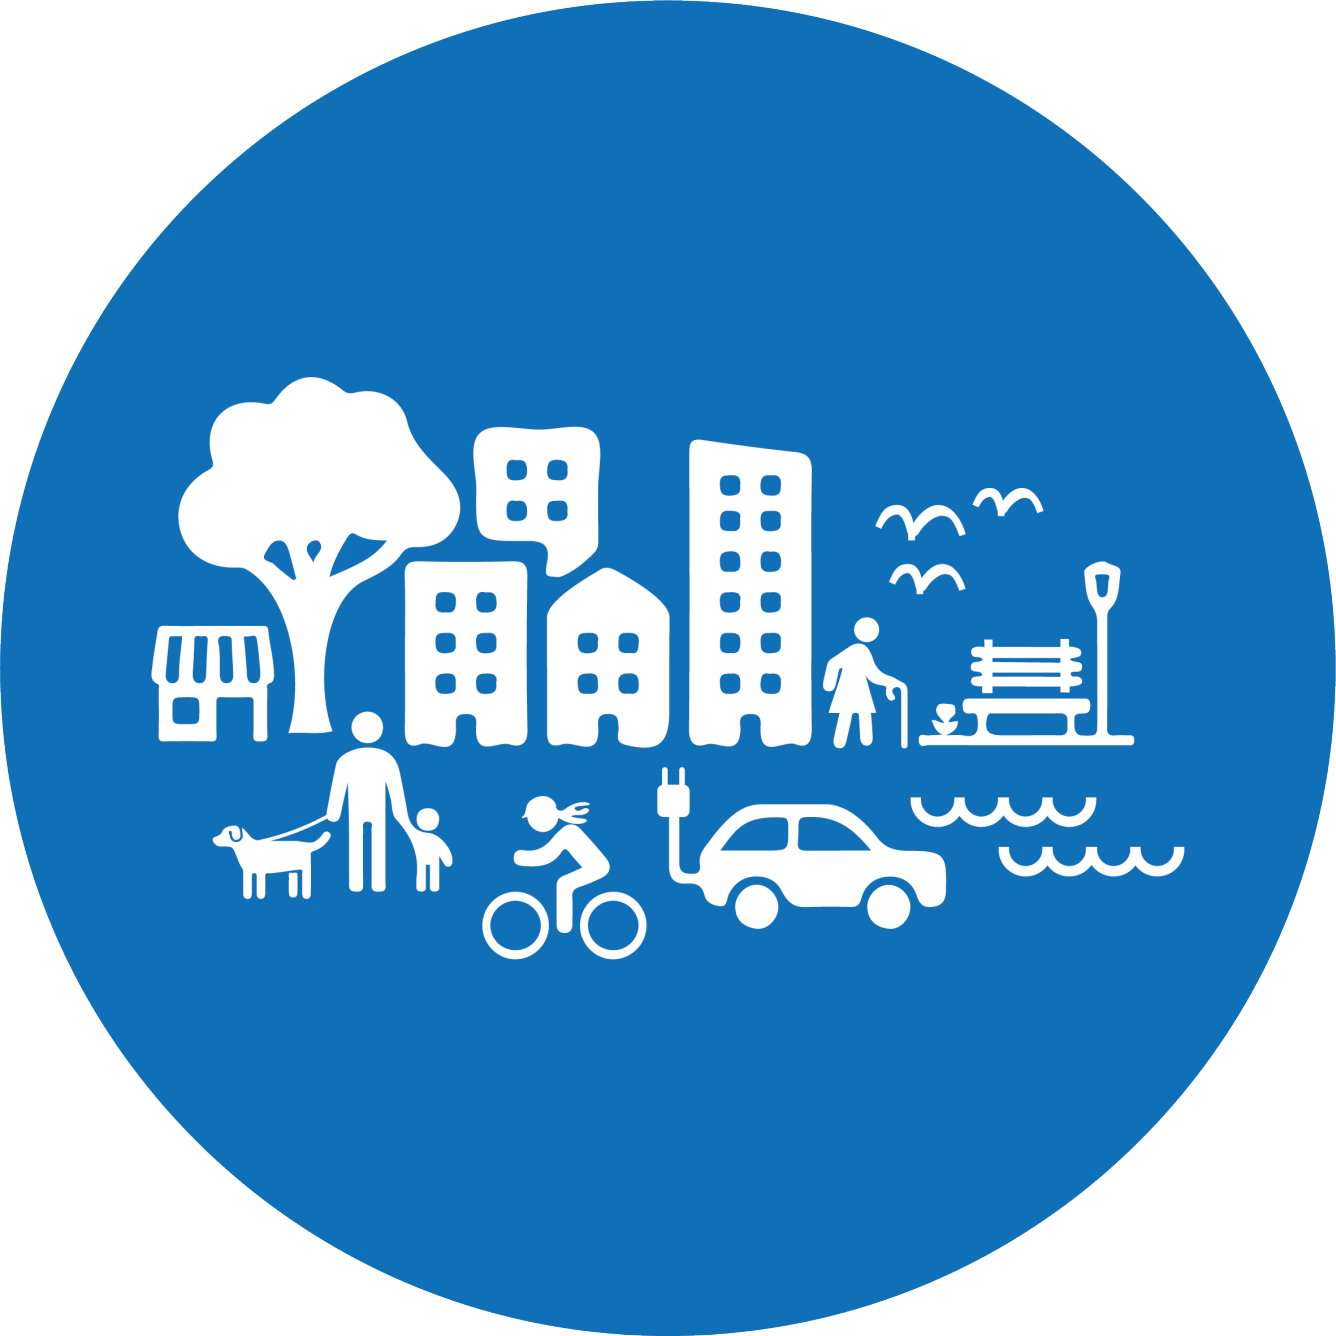 Blå cirkel som visar stad med olika typer av hus och byggnader, bilar människor, djur, träd, vatten och busshållplats.